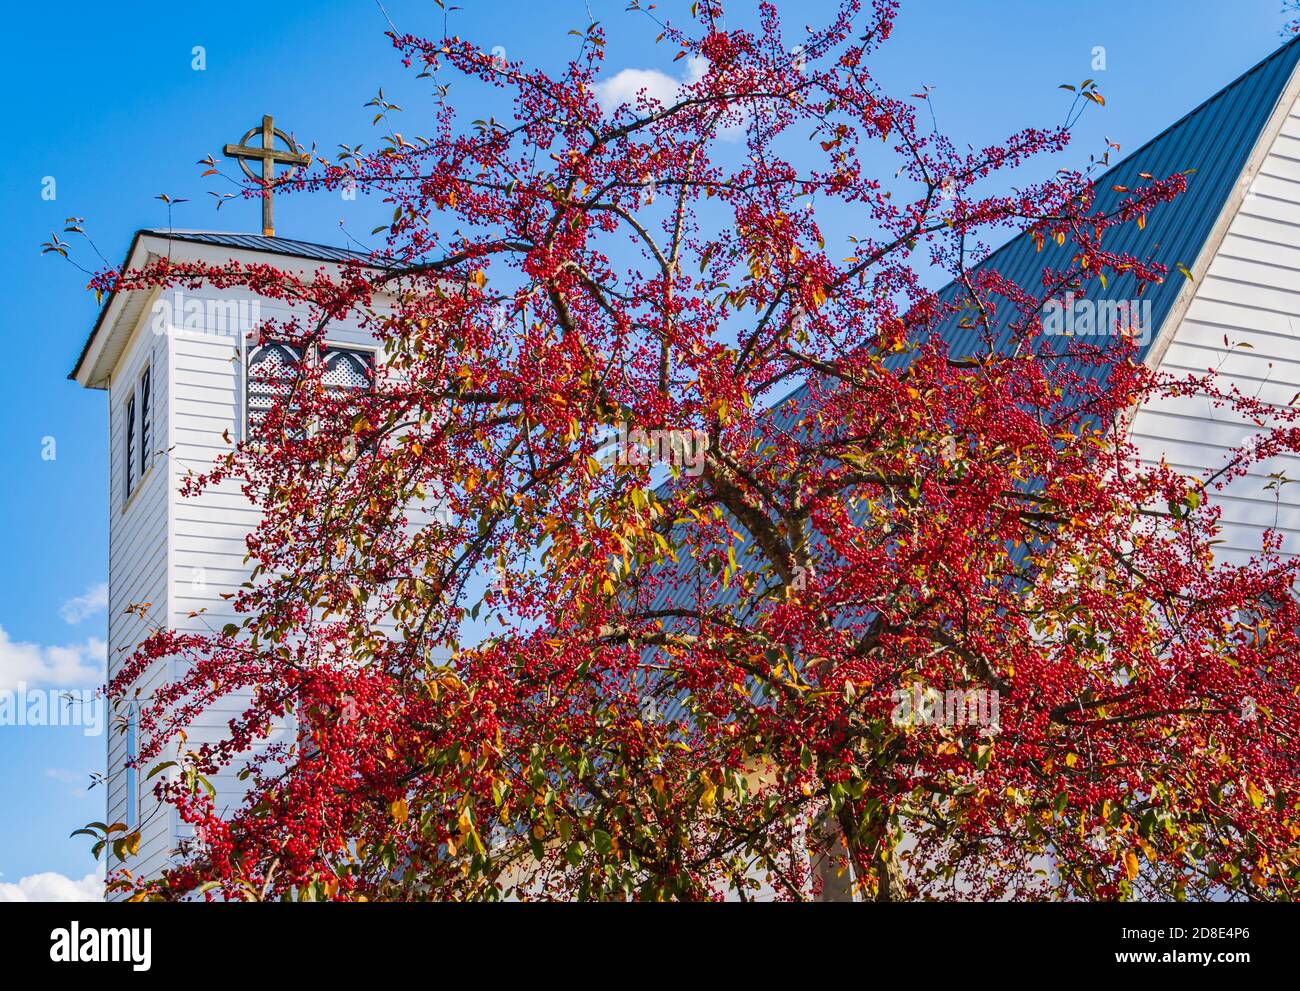 Leuchtend rote Beeren oder Krabbenäpfel bedecken den Baum im Herbst Vor dem weißen Kirchturm Stockfoto